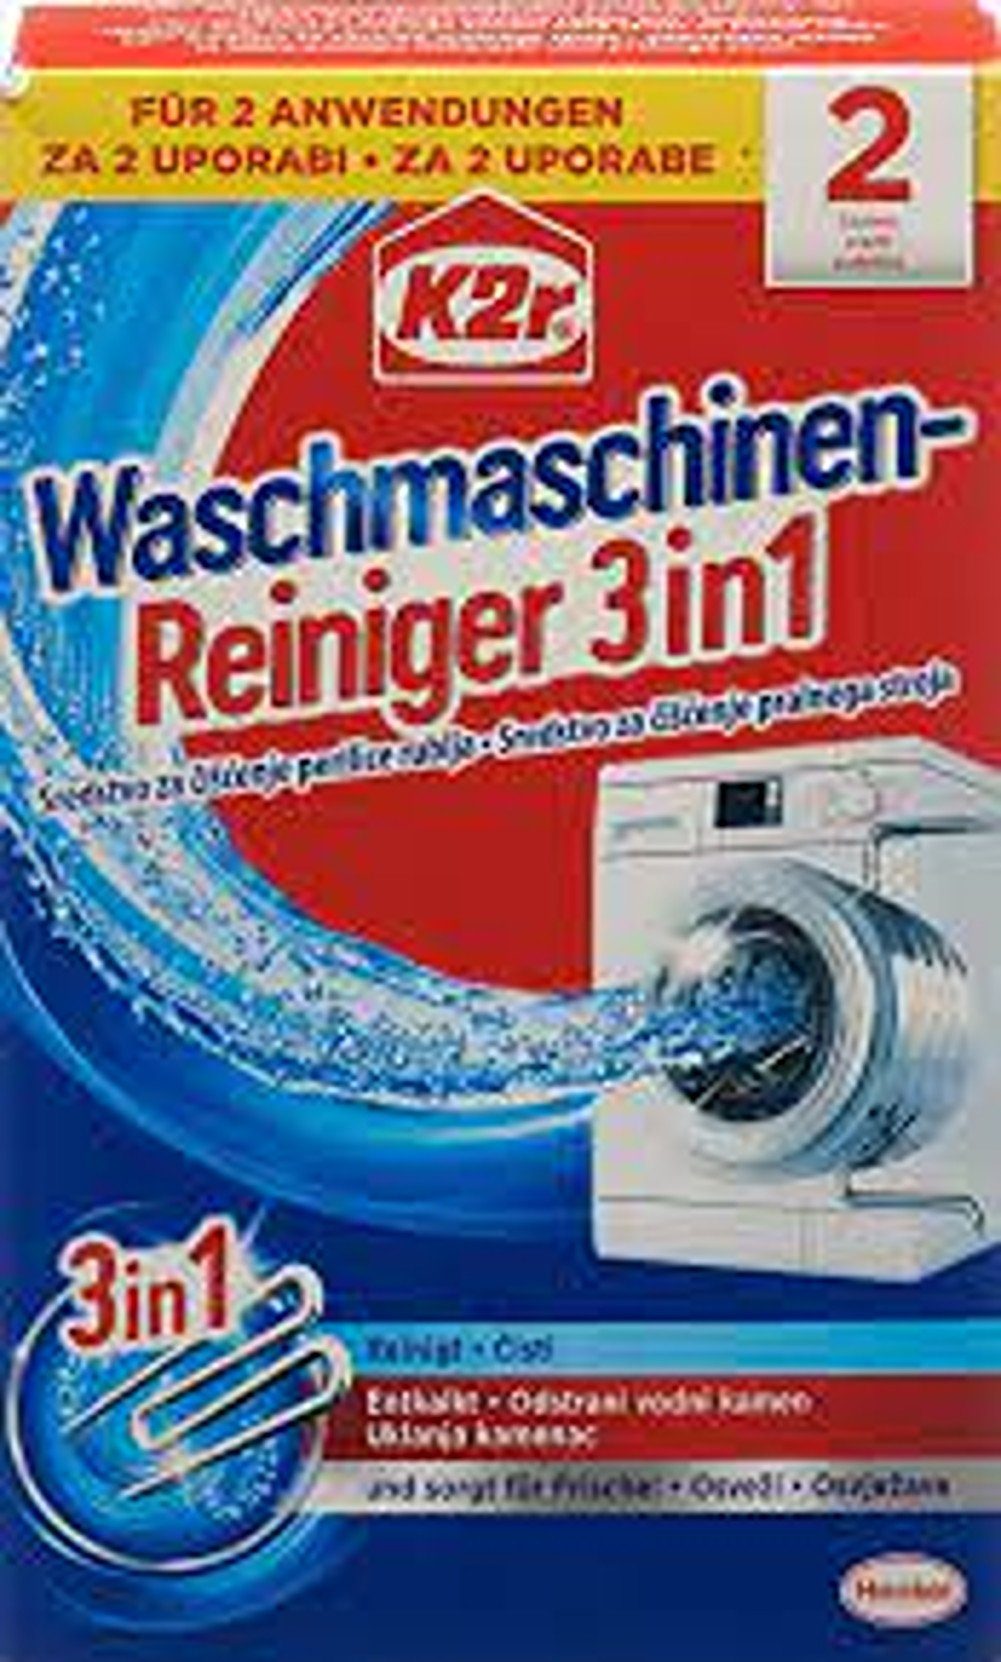 HENKEL K2r® Waschmaschinenreiniger 3 in 1 reinigt & pflegt 150 g Waschmaschinenpflege